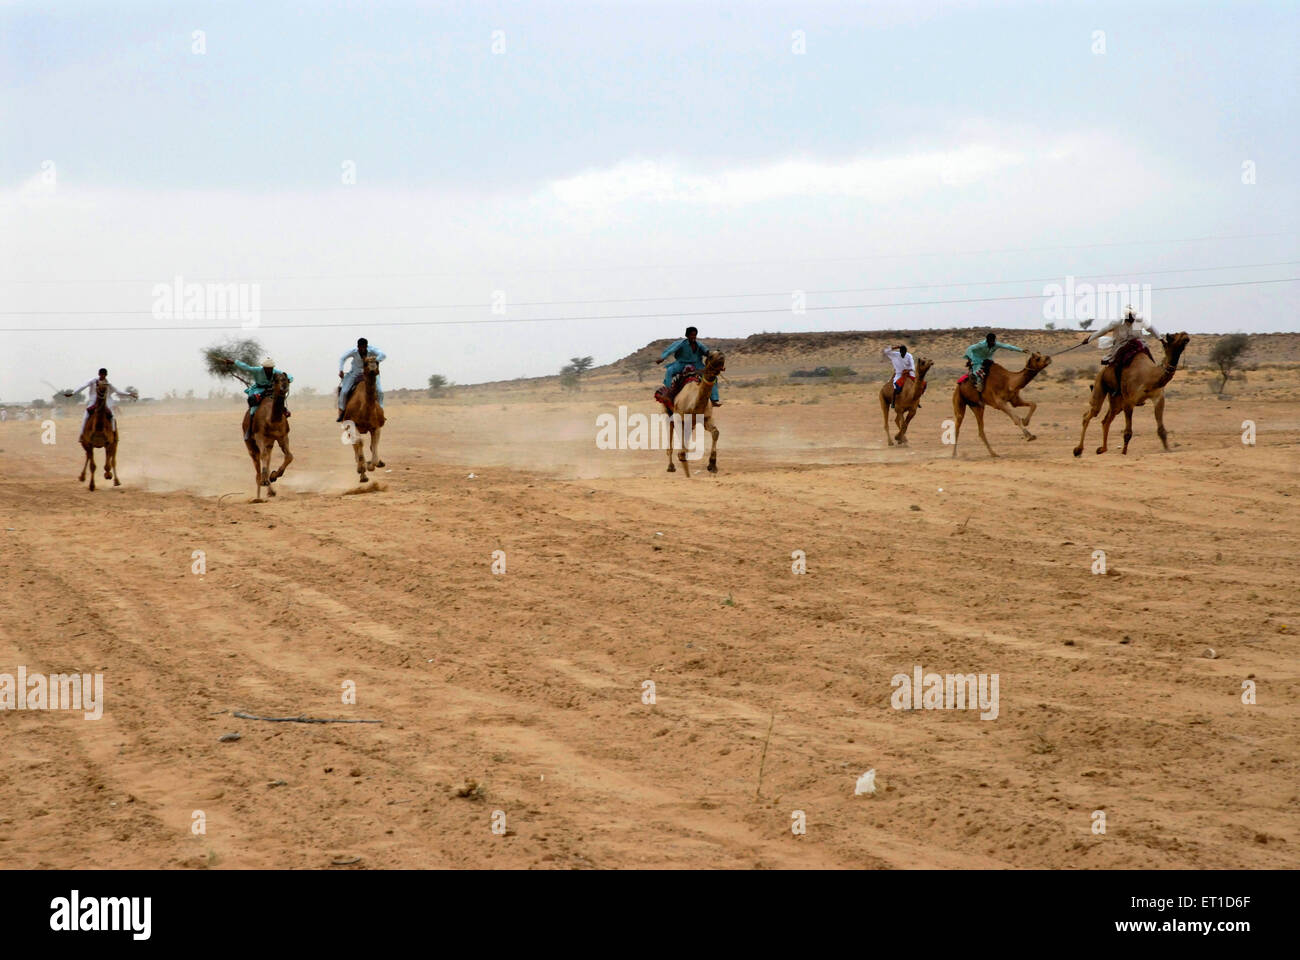 Course de chameaux à Dendasar stadium dans le désert de Jaisalmer Rajasthan festival ; ; ; l'Inde 2009 Banque D'Images